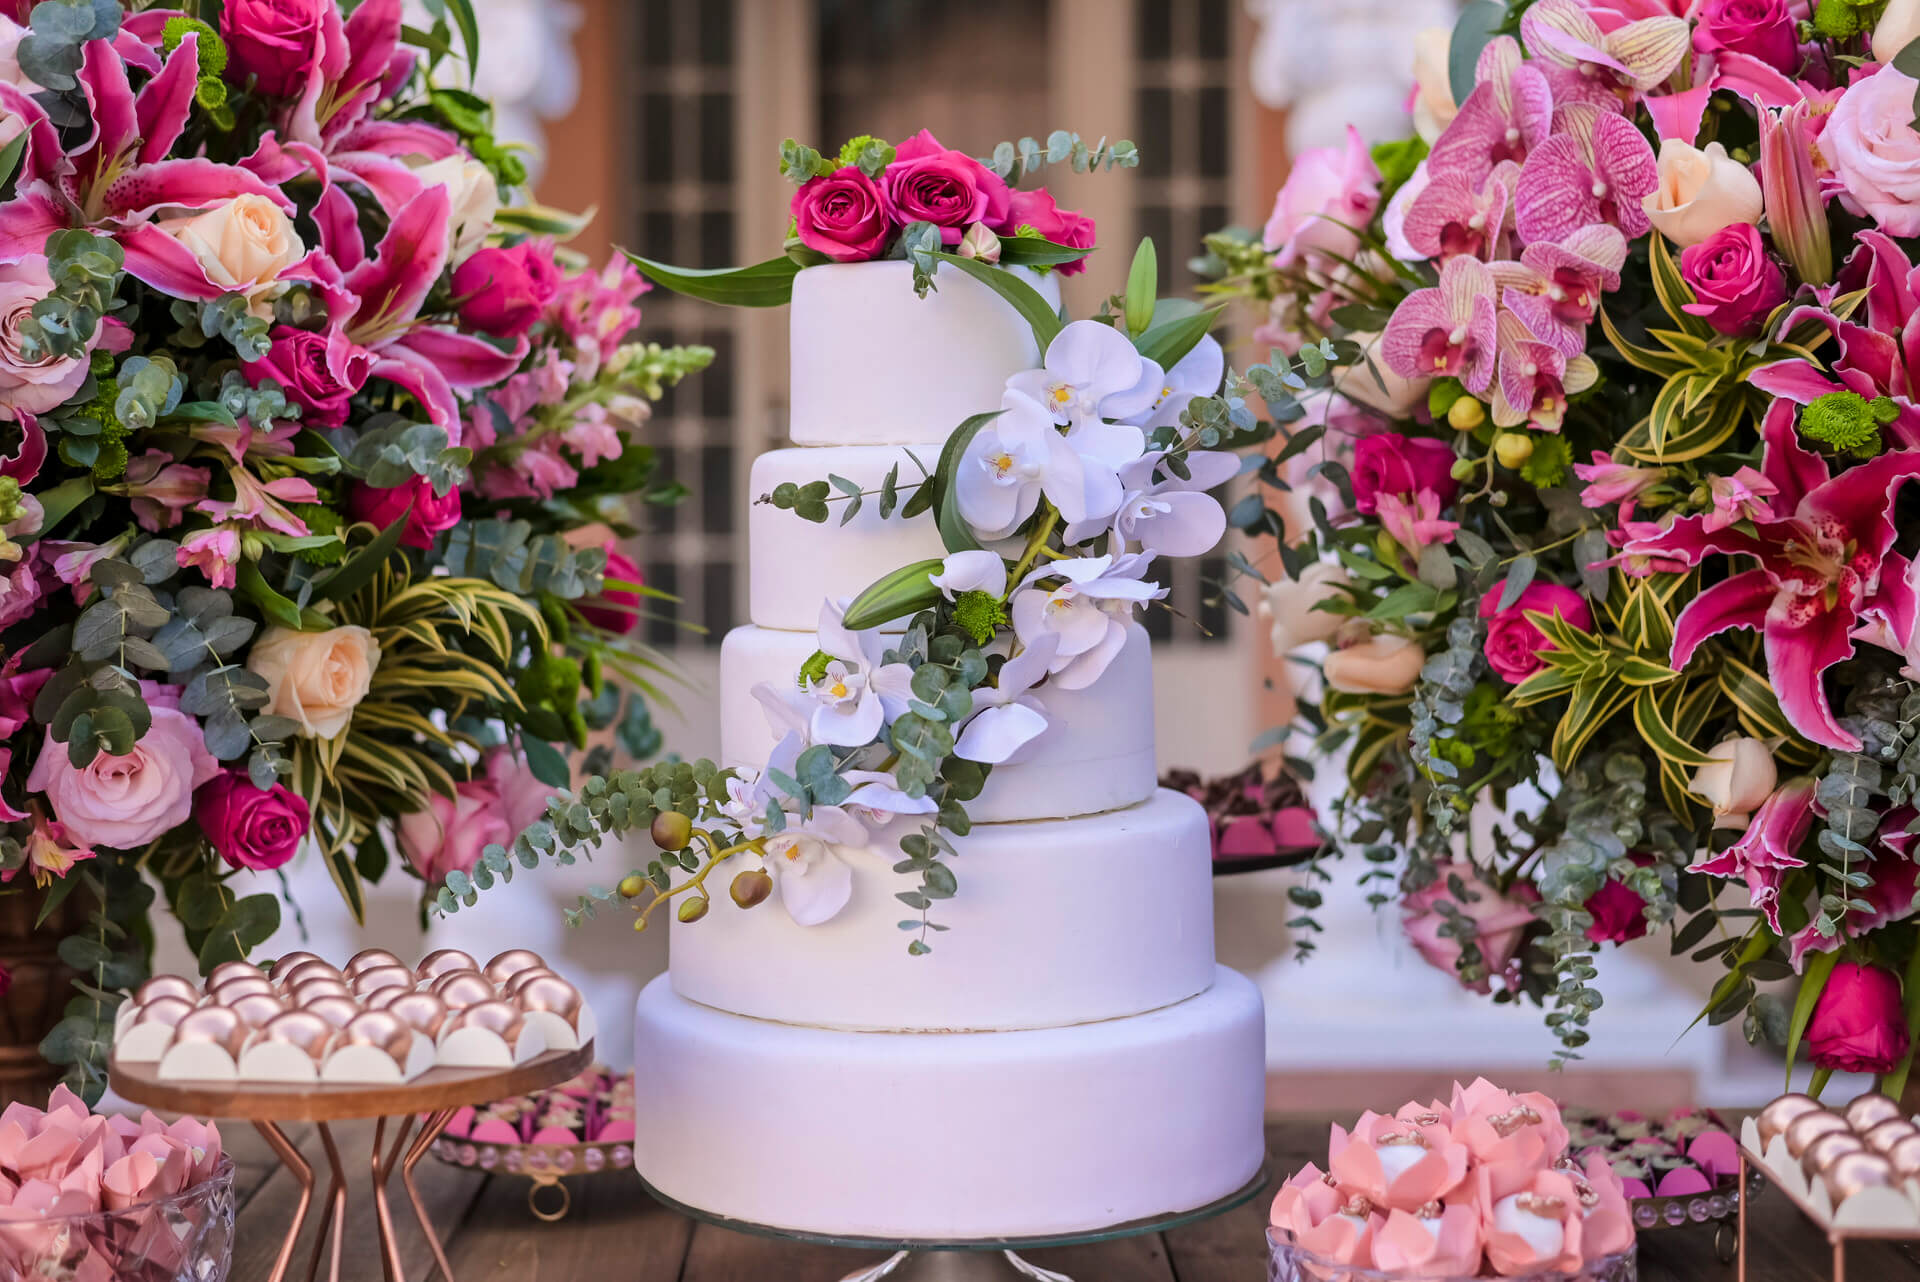 bolo de casamento com cinco andares com orquideas brancas com rosas no topo